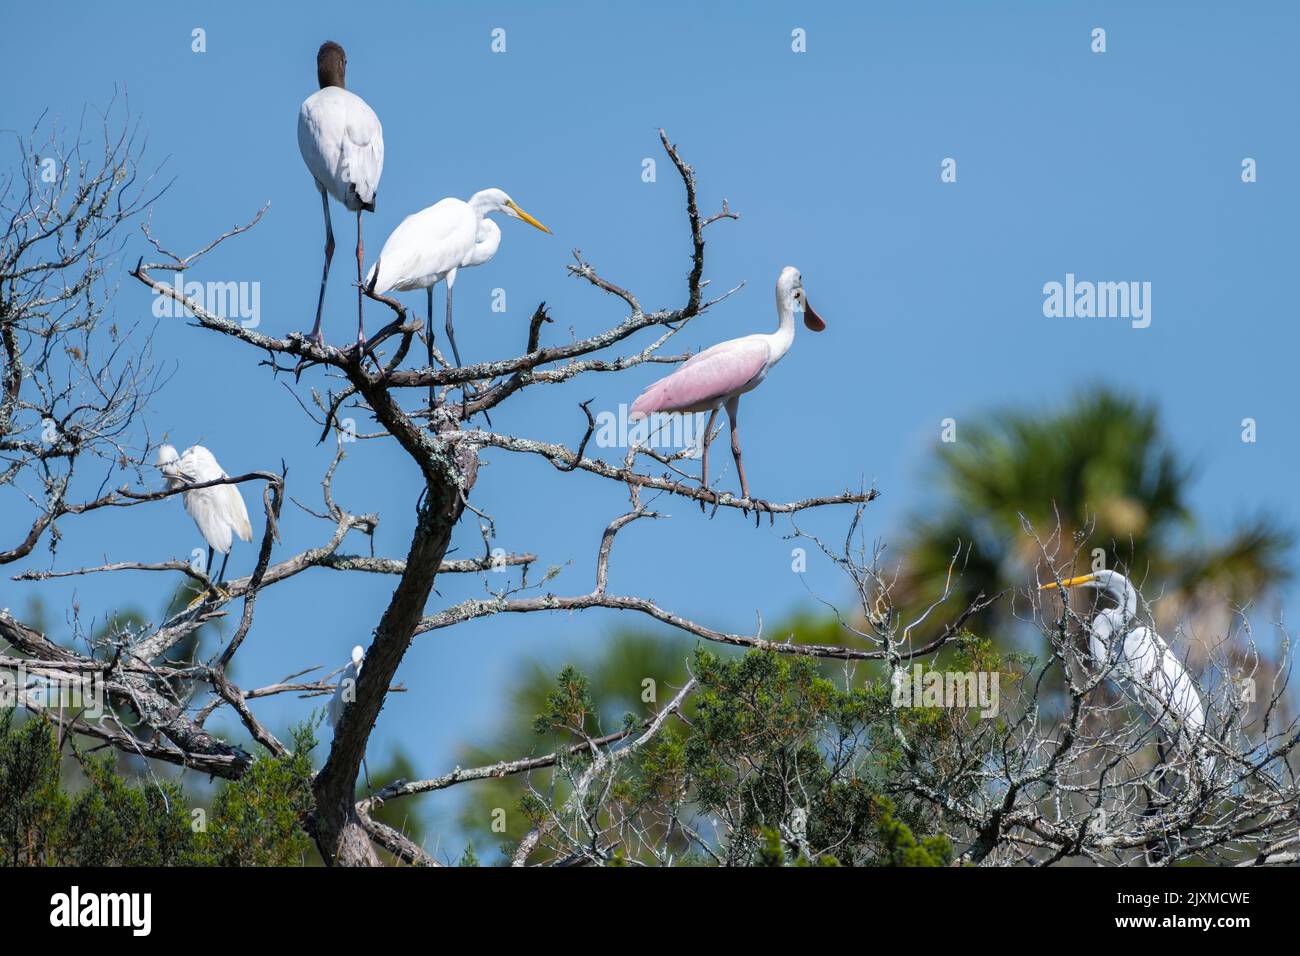 Grandi egrette, una spatola e una cicogna di legno condividono i rami di un albero morto al Fort Mose Historical state Park a St. Augustine, Florida. Foto Stock